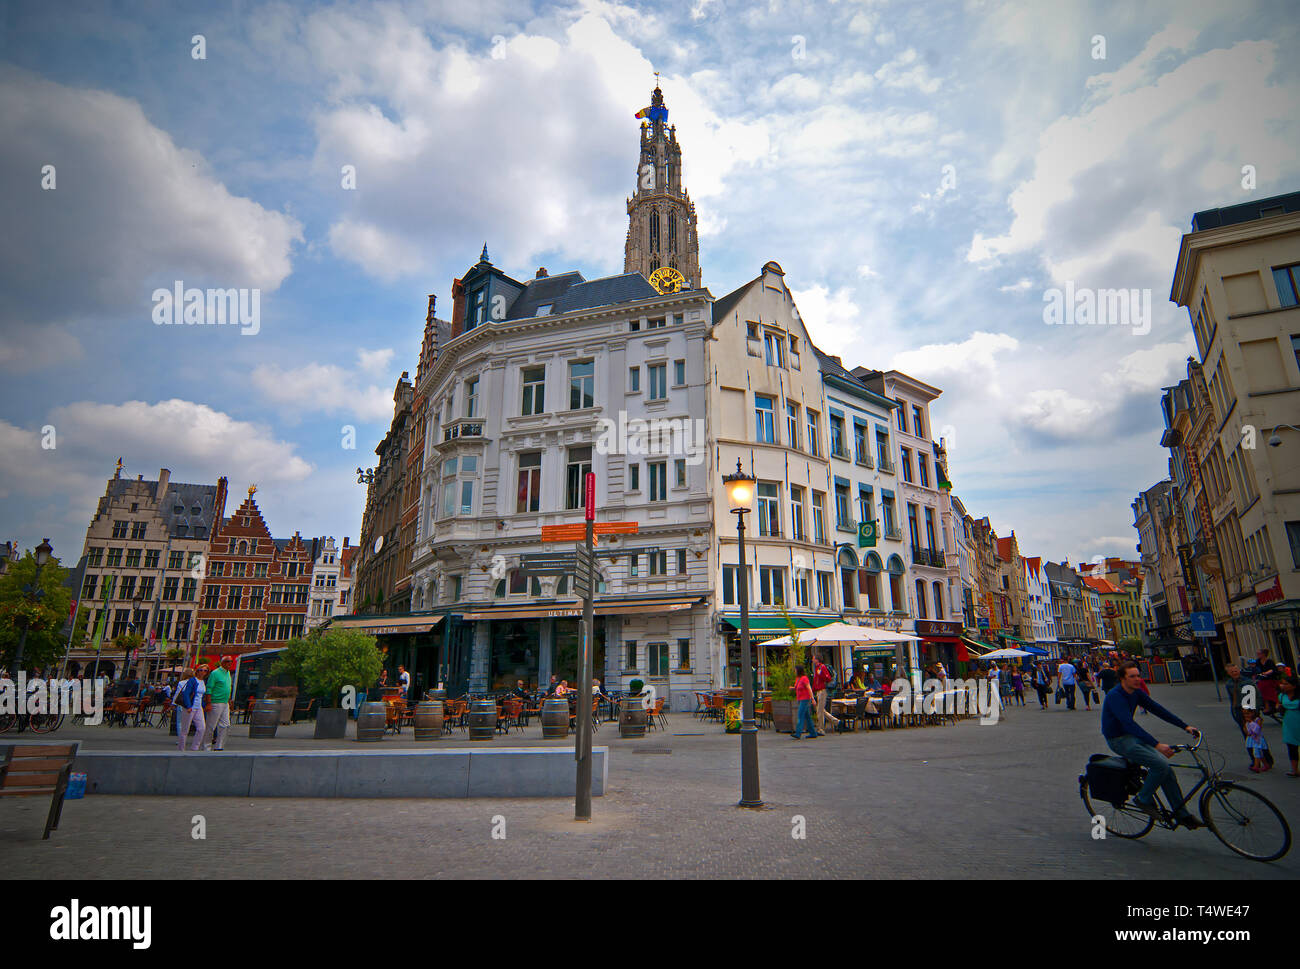 Antwerpen in Belgium Stock Photo